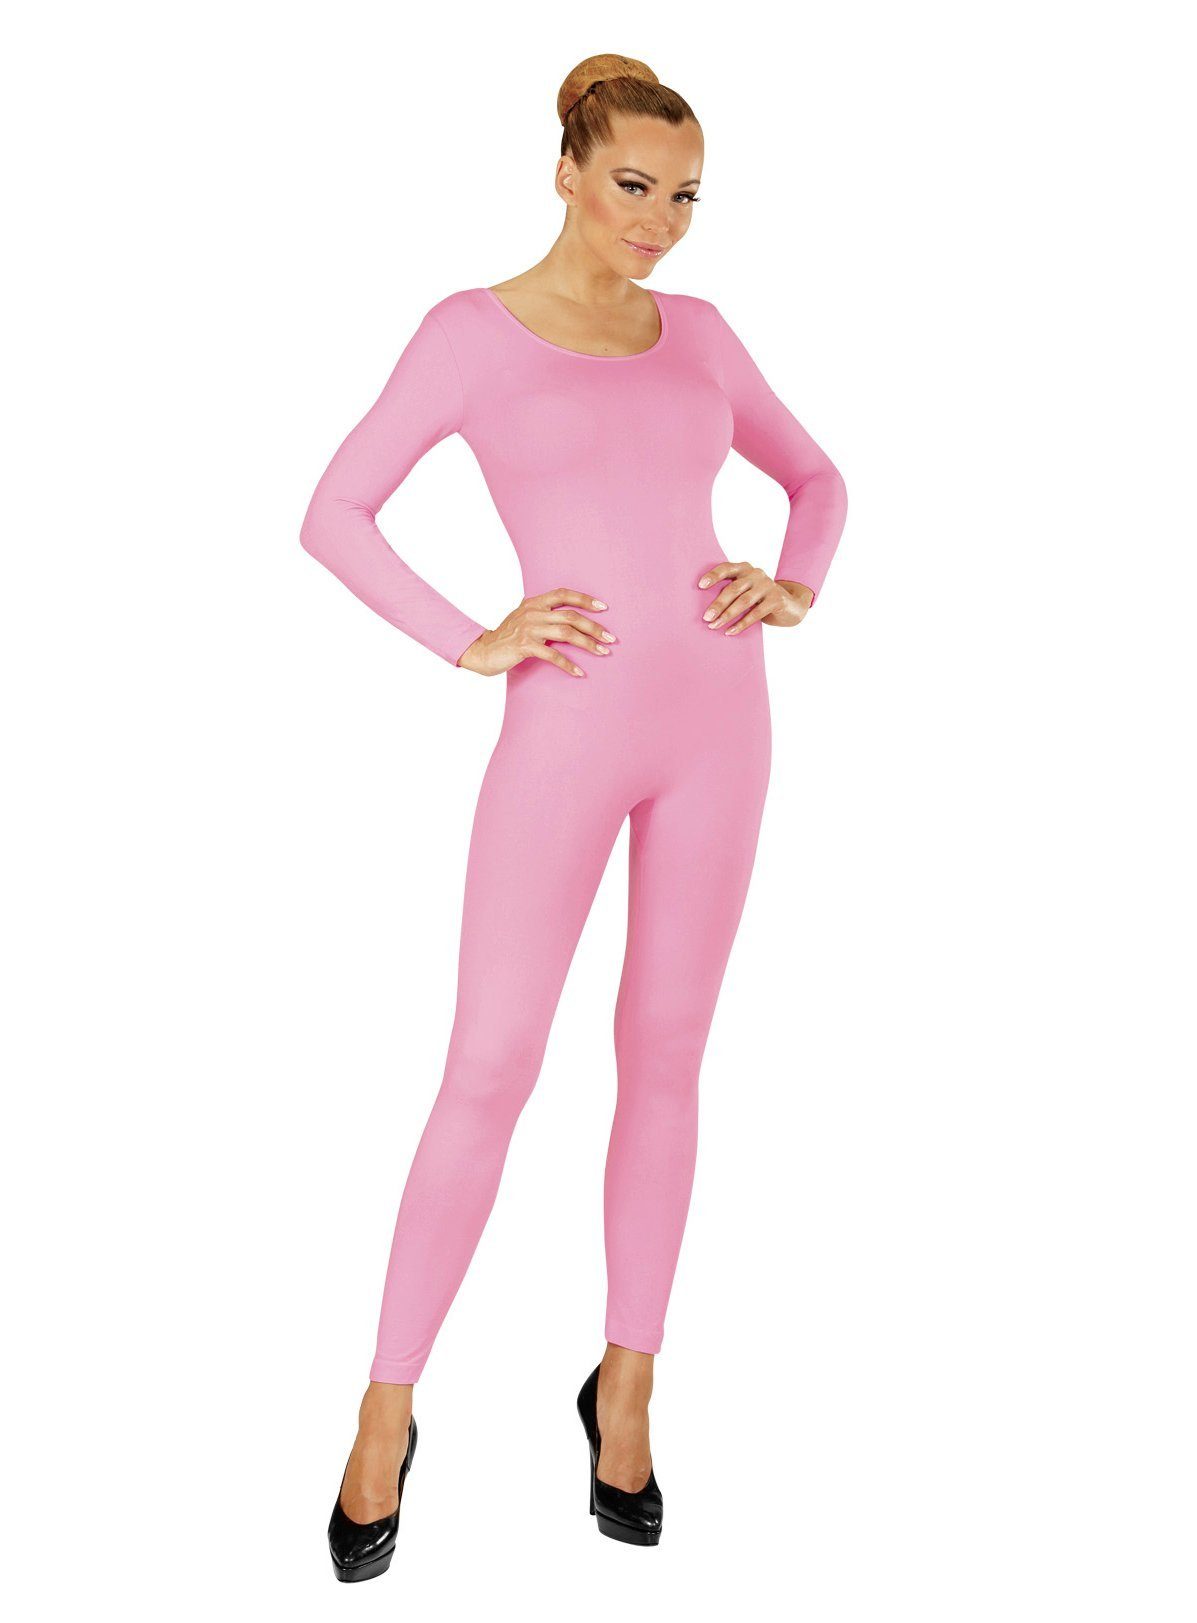 Widdmann Kostüm Langer Body rosa, Einfarbige Basics zum individuellen Kombinieren